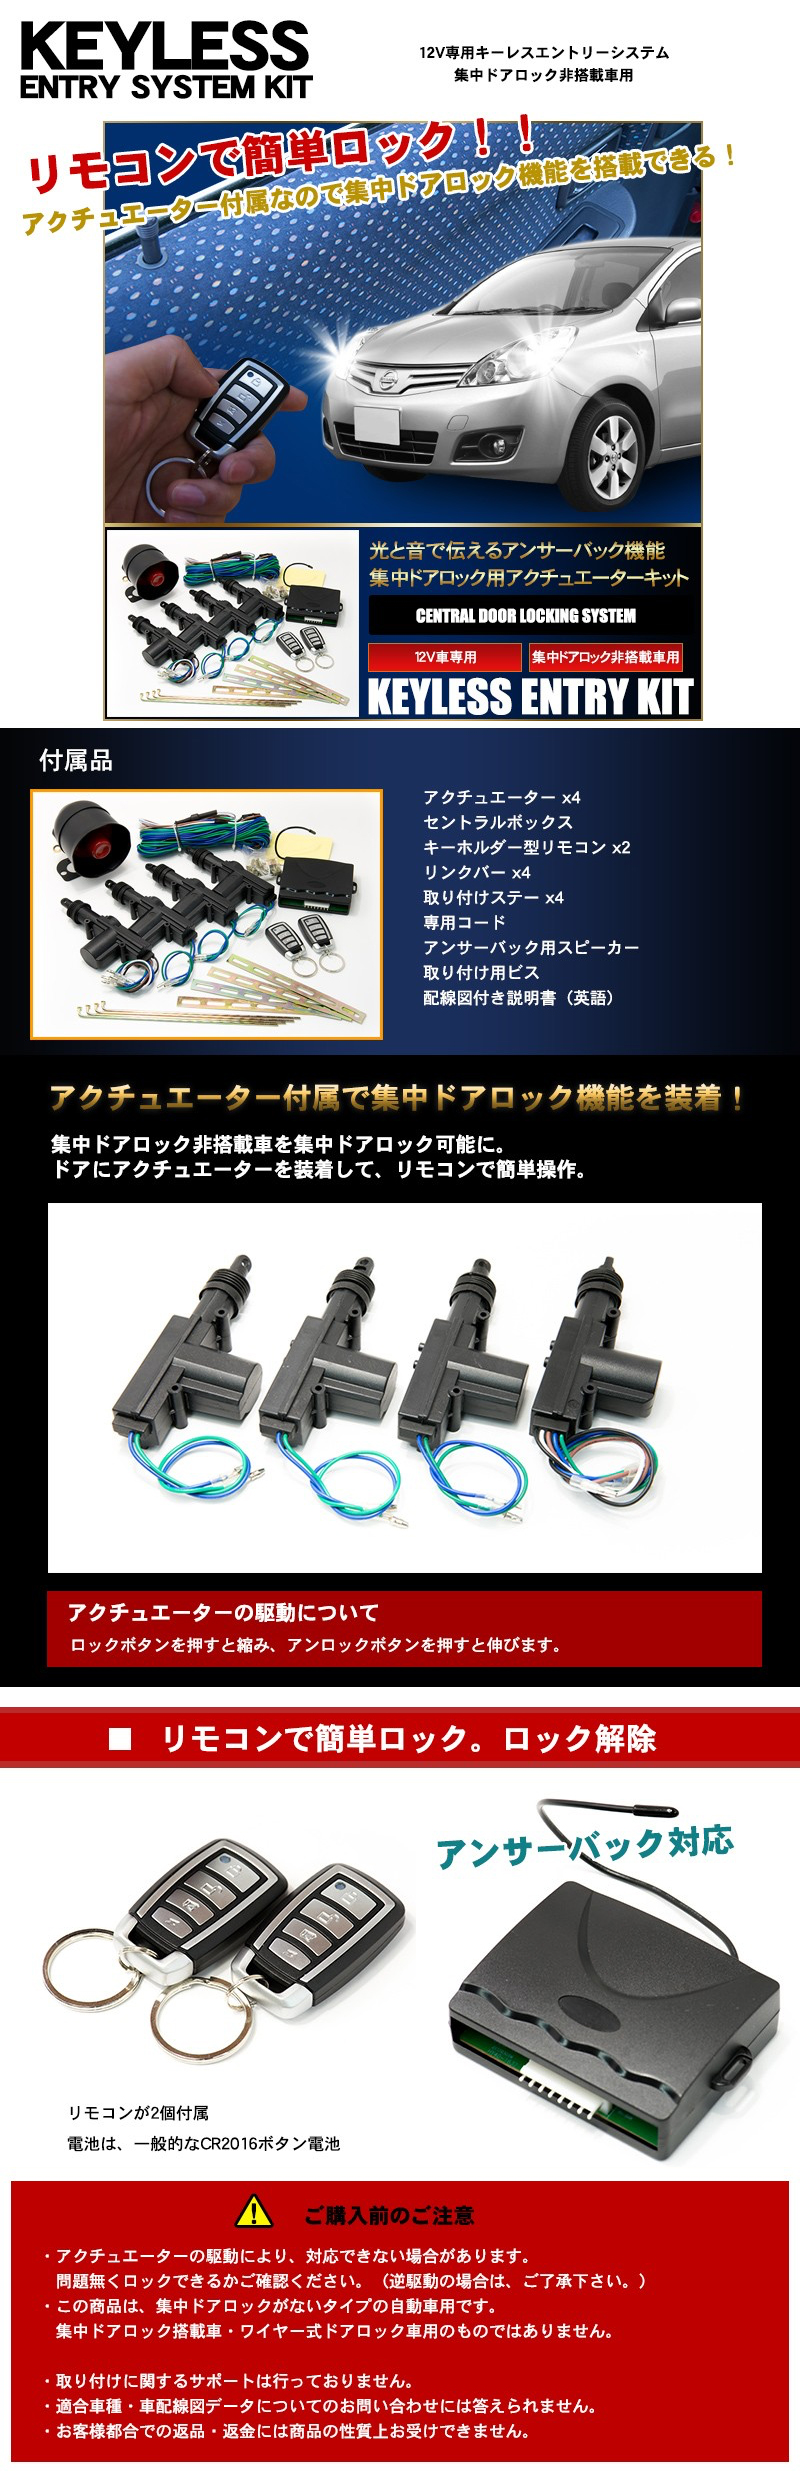 Tanakasan Shop キーレスエントリーキット アンサーバックサイレン付 Dv12v 集中ドアロック機能非搭載車 にリモコン機能を搭載するためのキット